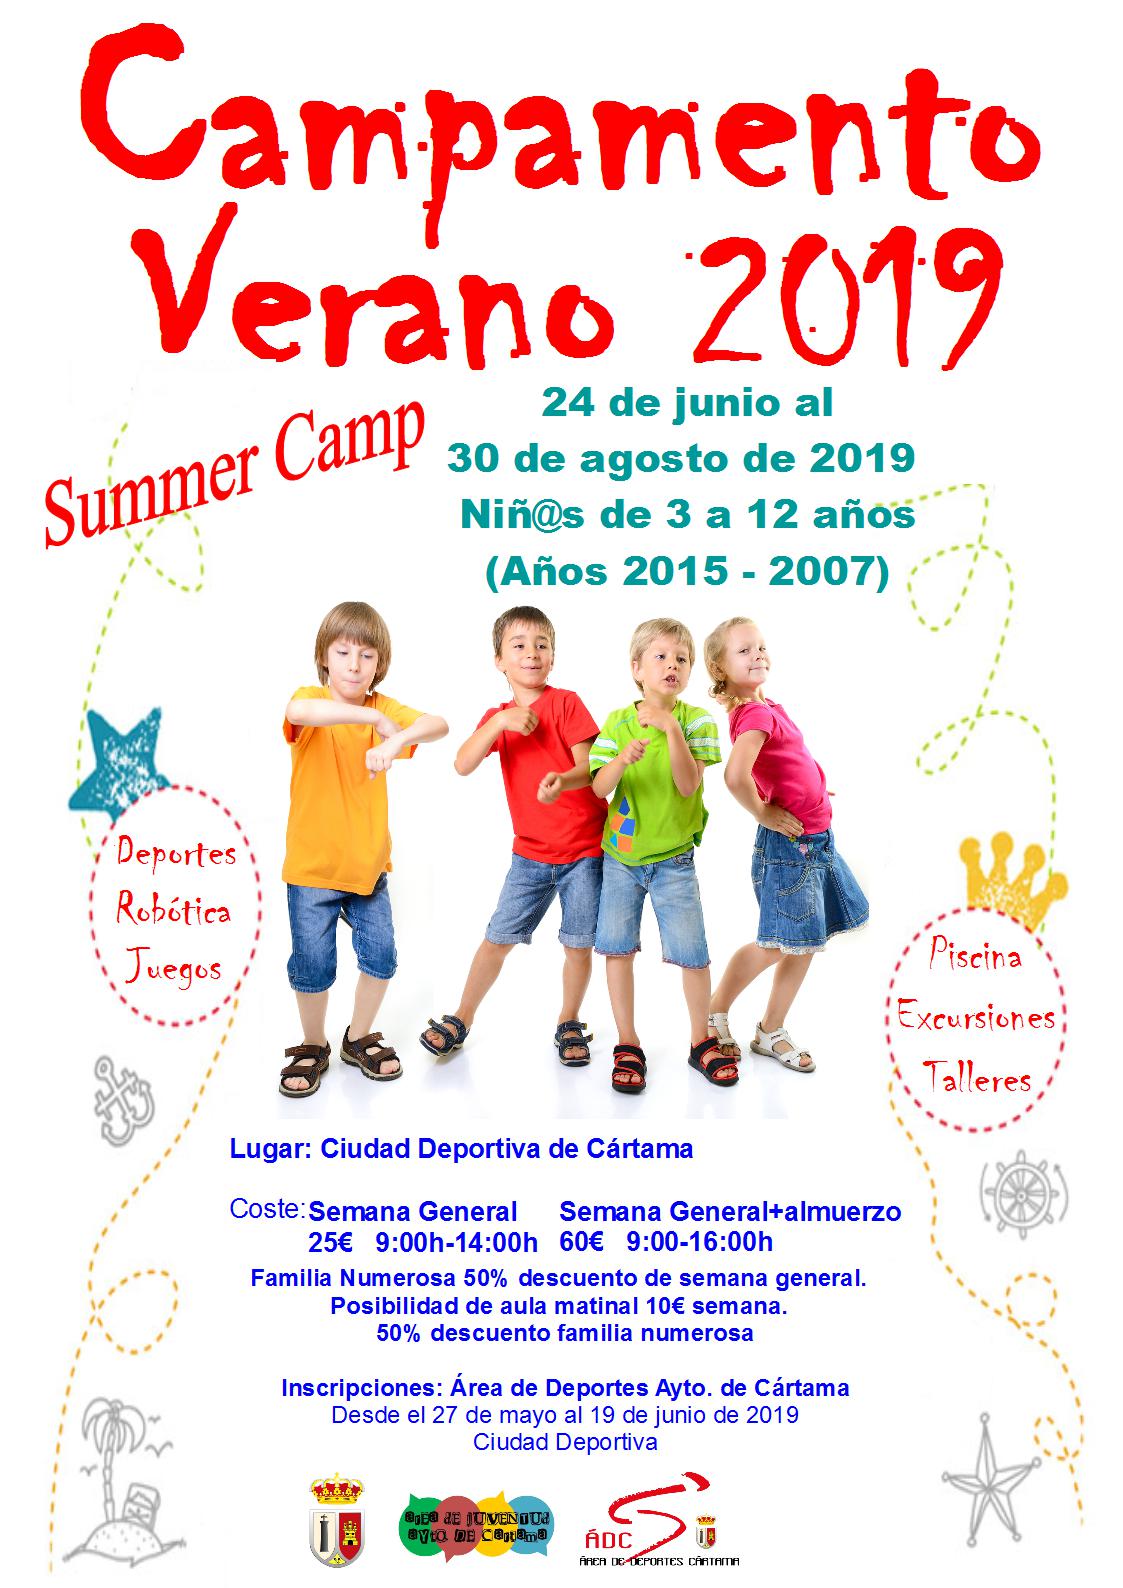 Campamento verano Cártama 2019